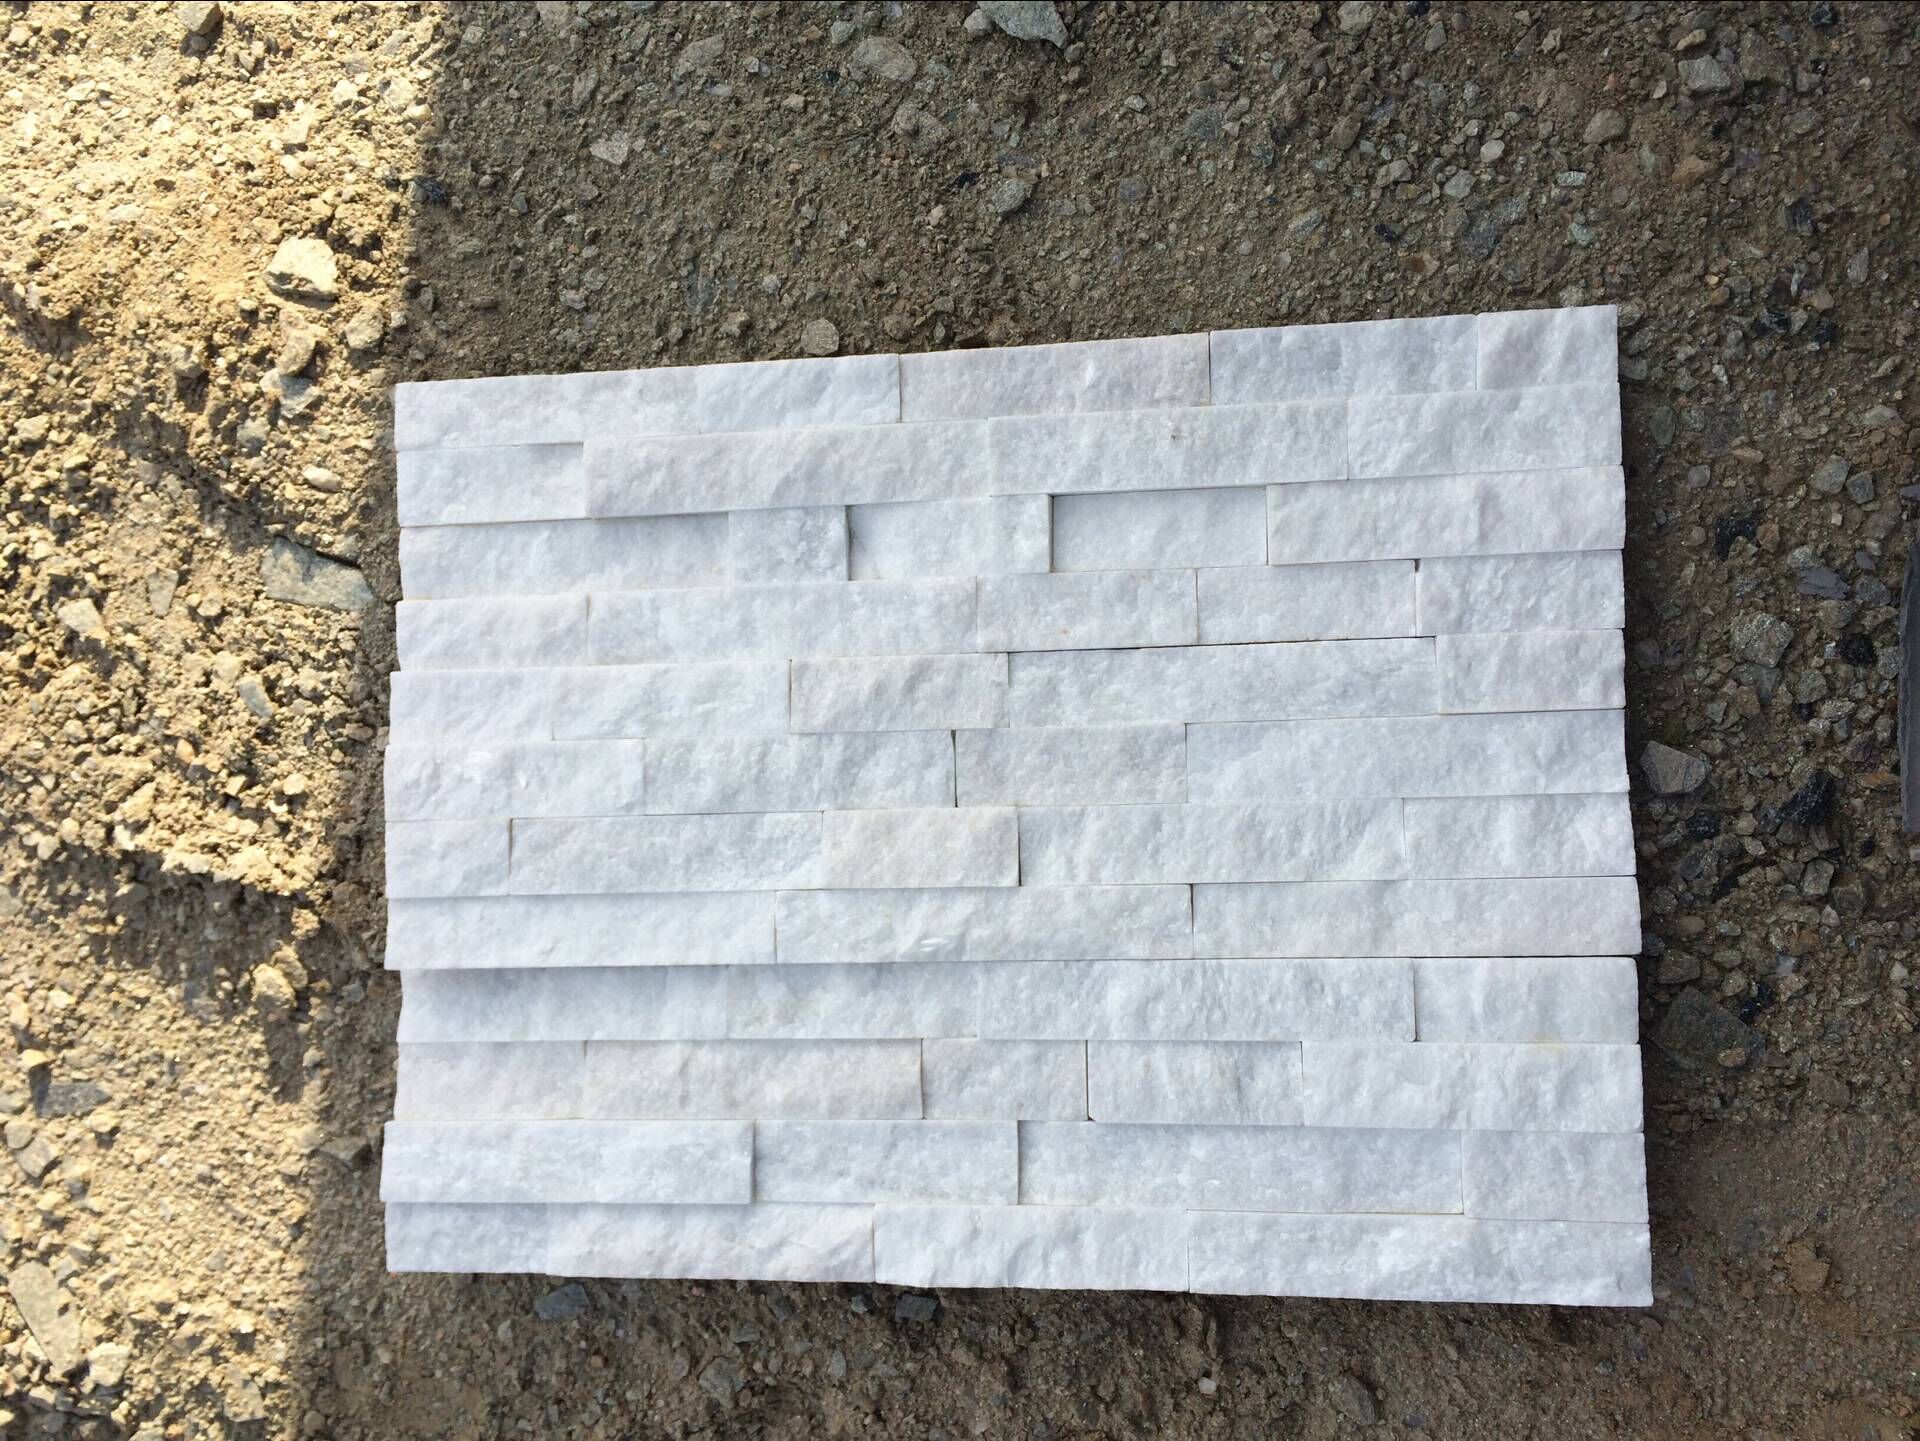 RSC 001 πολιτιστική πέτρα λευκού χαλαζίτη για πλακάκια τοίχου
